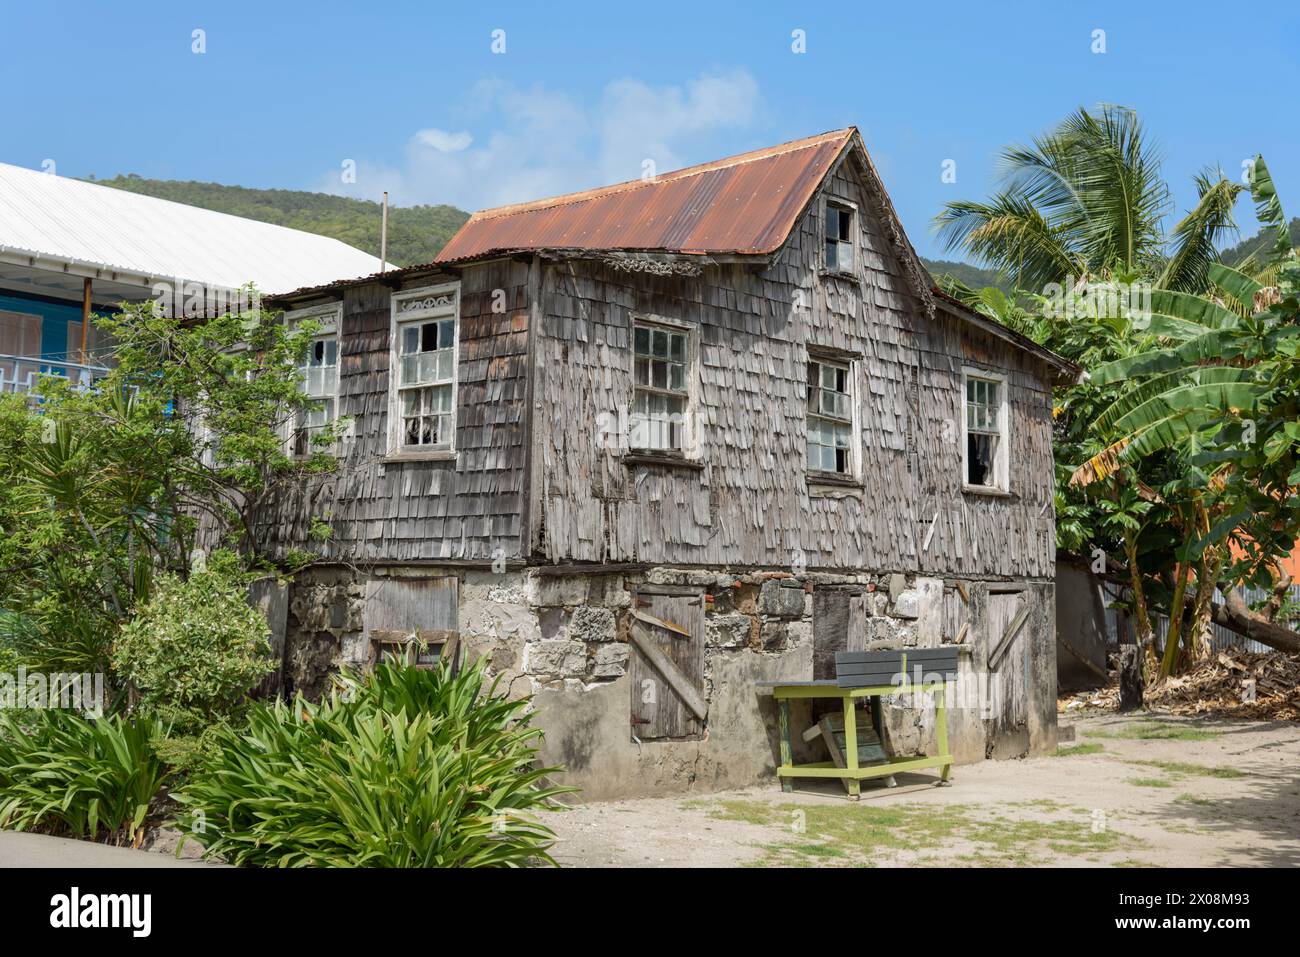 Bâtiment traditionnel en bois, Port Elizabeth, île de Bequia, St Vincent et les Grenadines, Caraïbes Banque D'Images